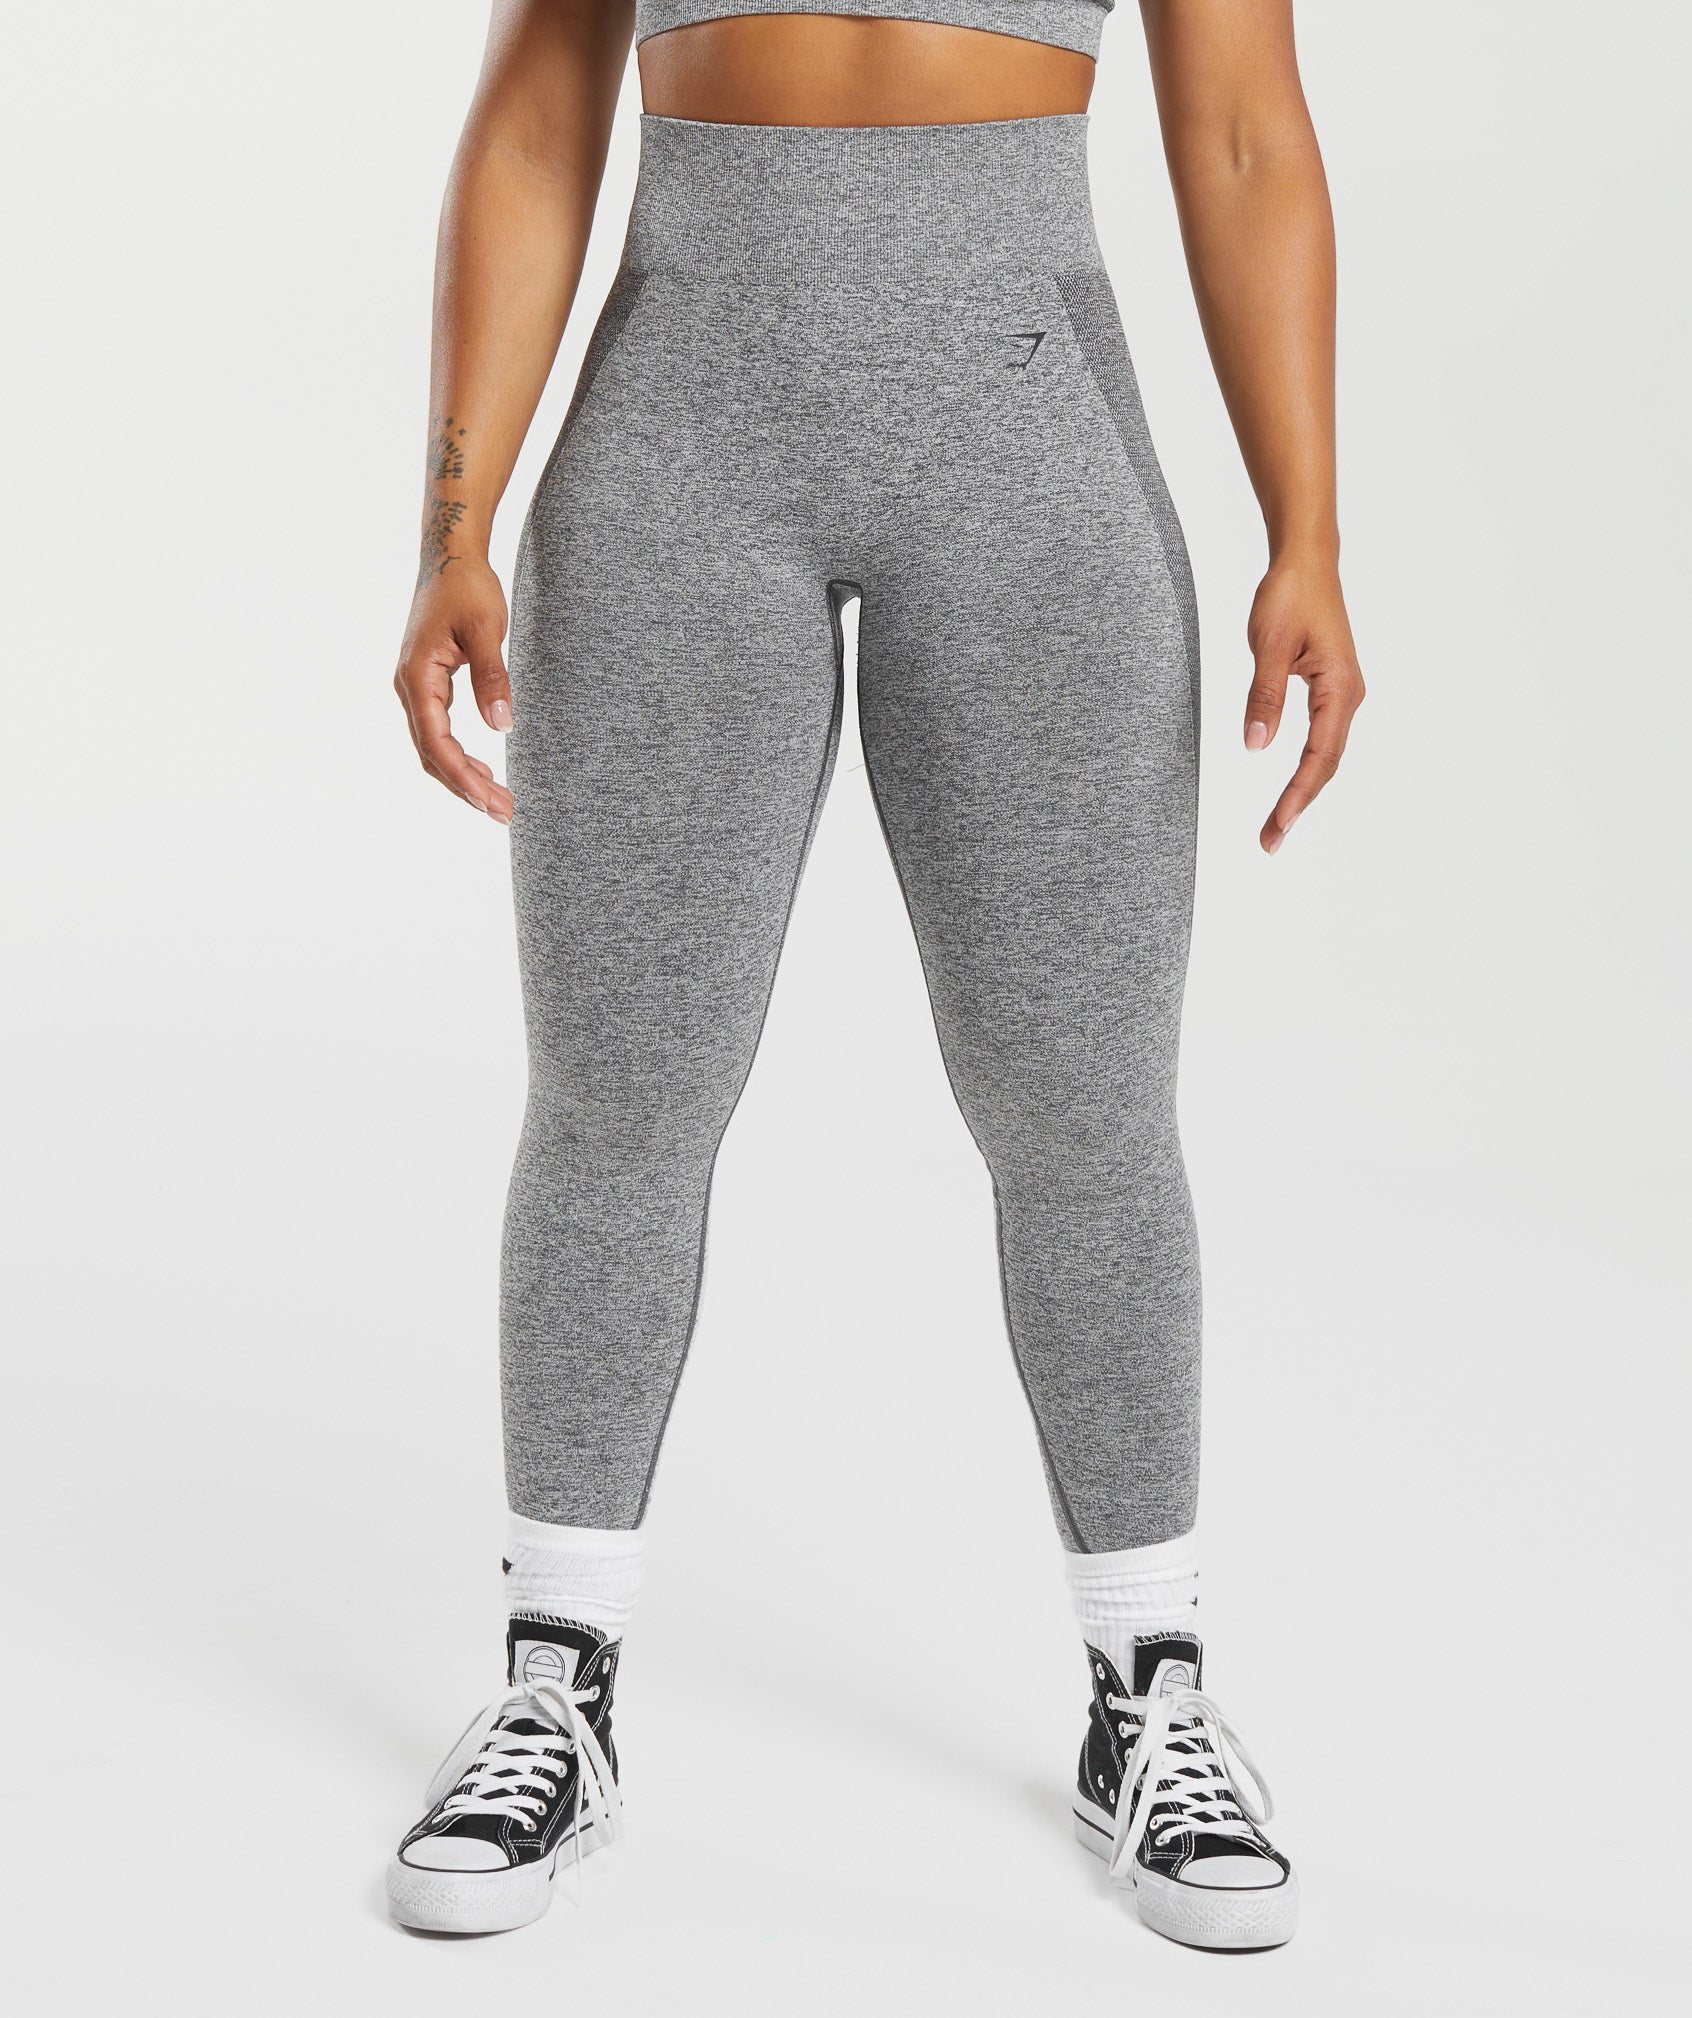 New! Gymshark leggings size Medium  Gymshark flex leggings, Flex leggings,  Womens sports fashion